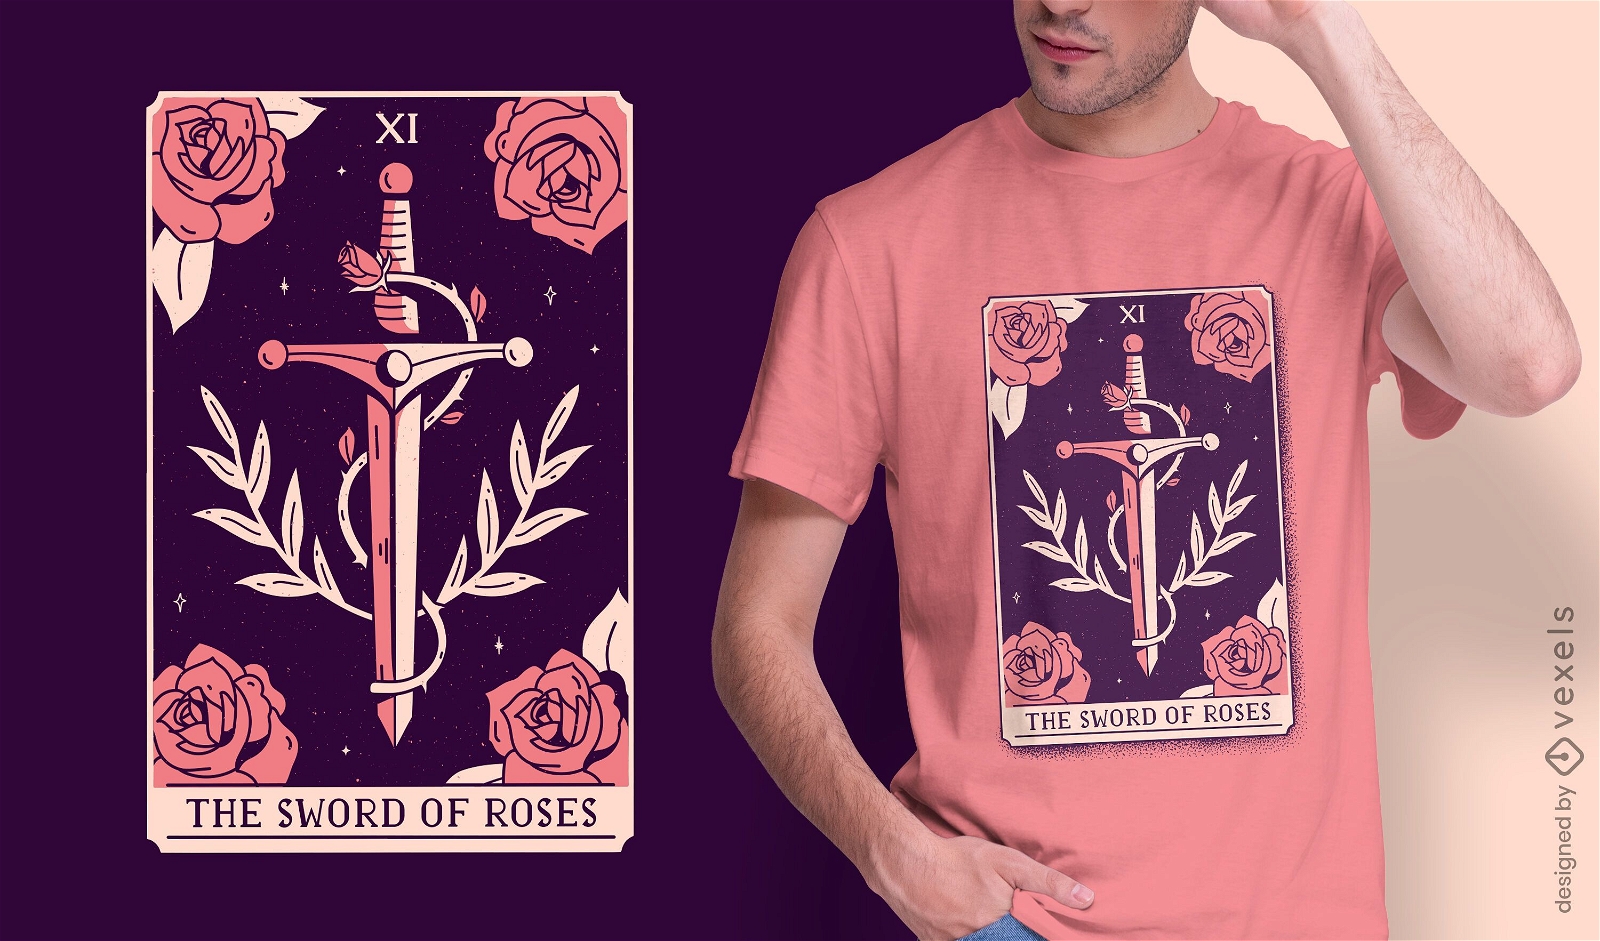 Diseño de camiseta de carta de tarot mística espada y rosas.